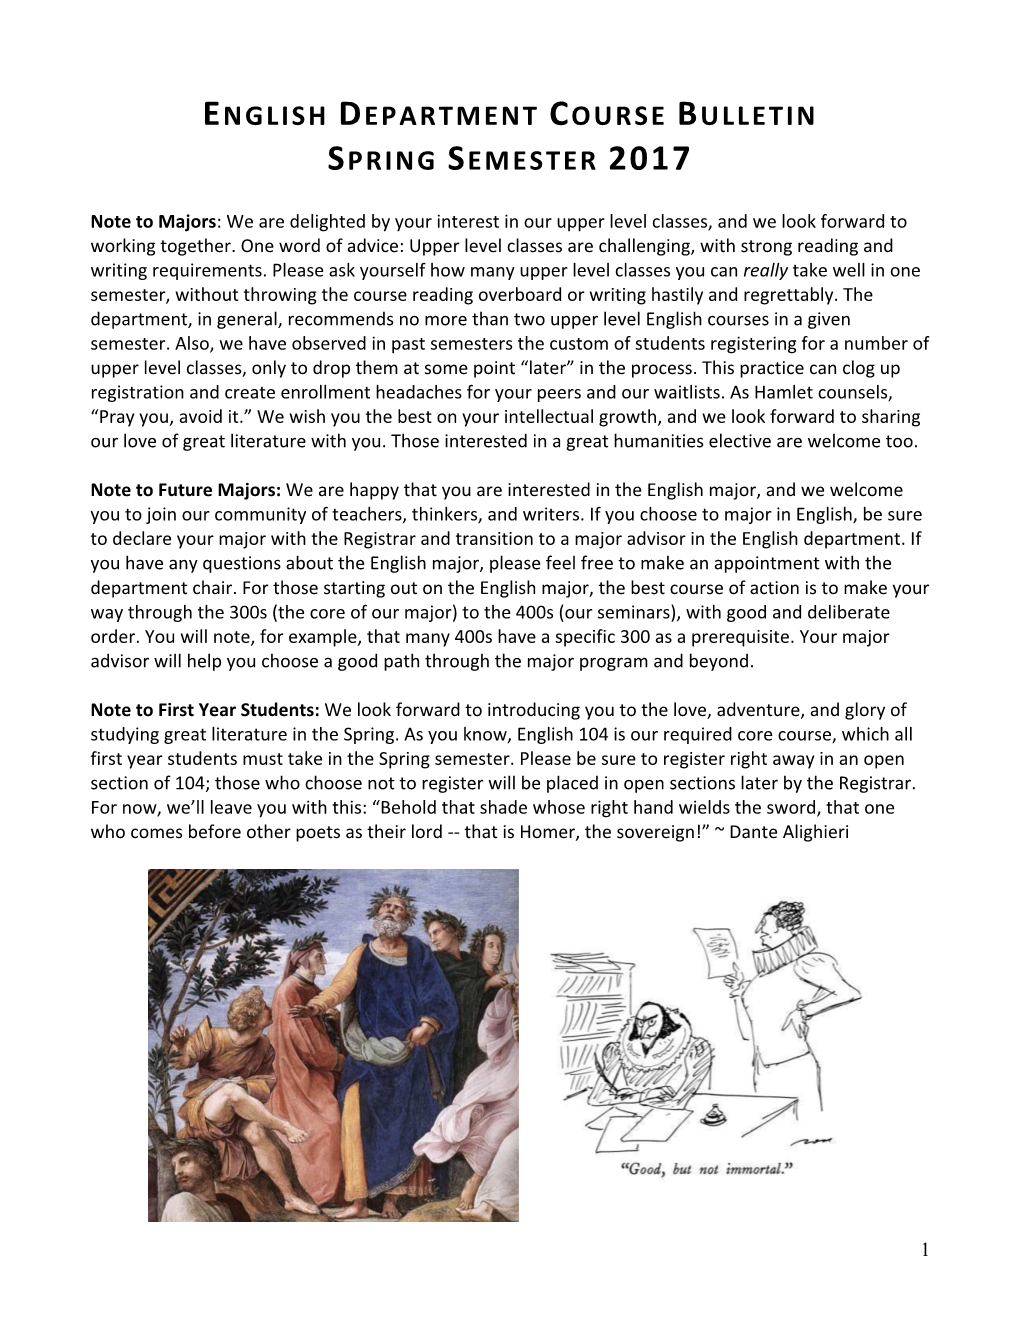 Spring 2017 Course Bulletin